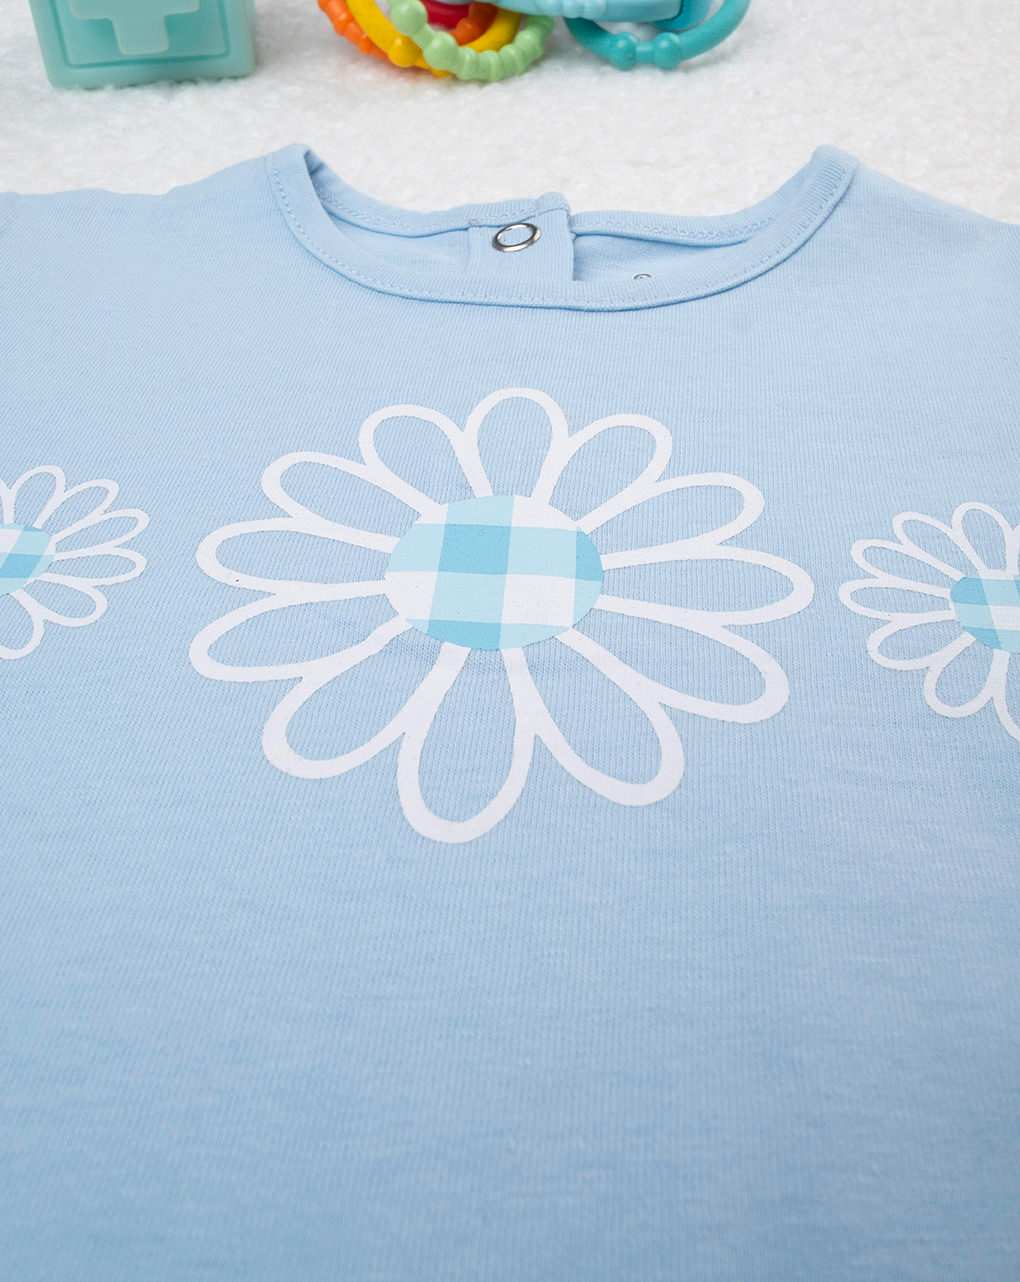 βρεφικό t-shirt γαλάζιο με λουλούδια για κορίτσι - Prénatal